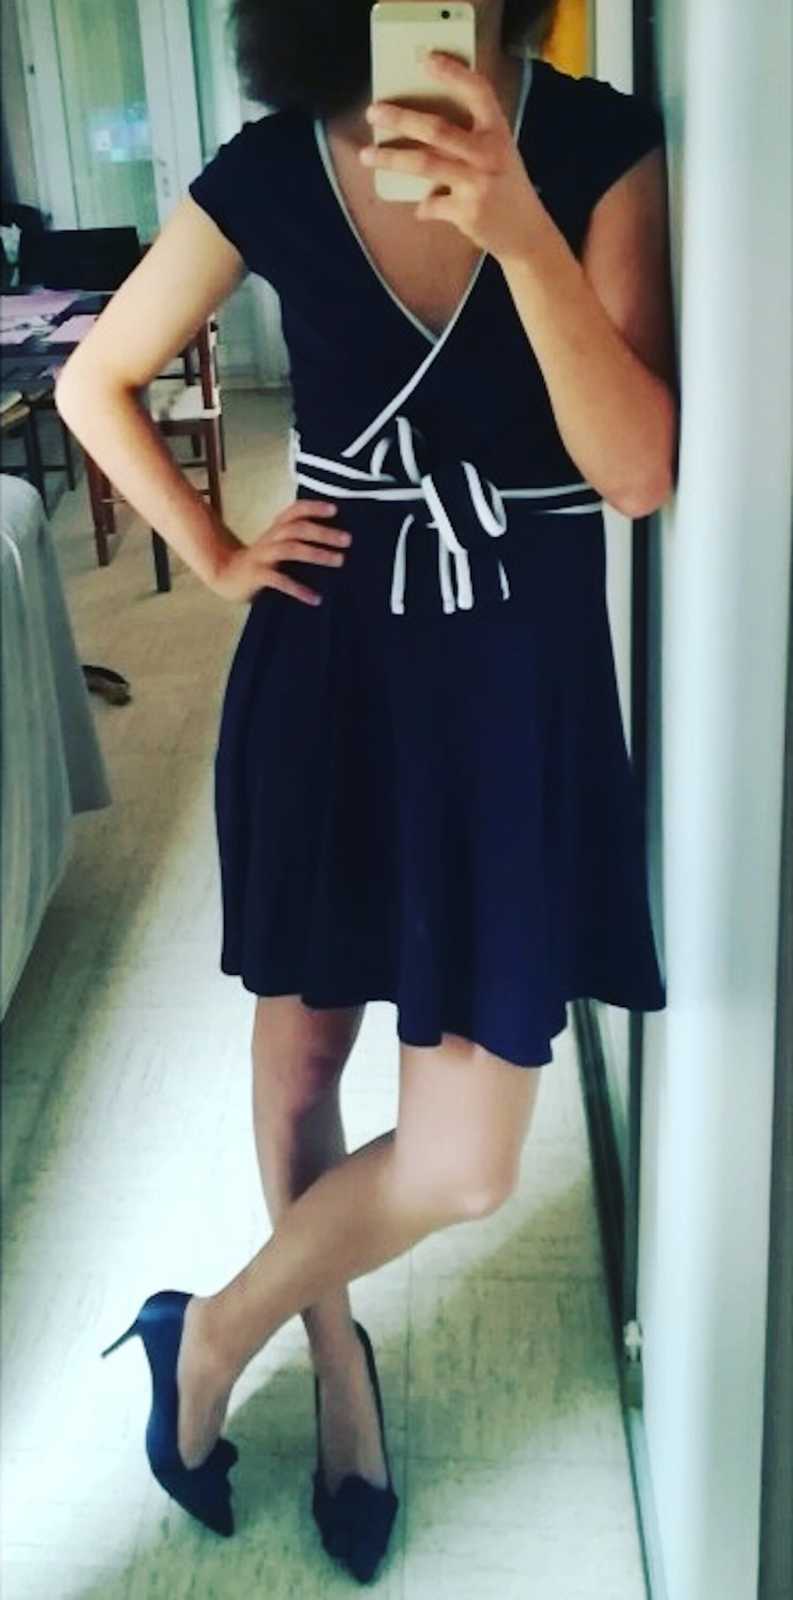 transgender woman in a dress